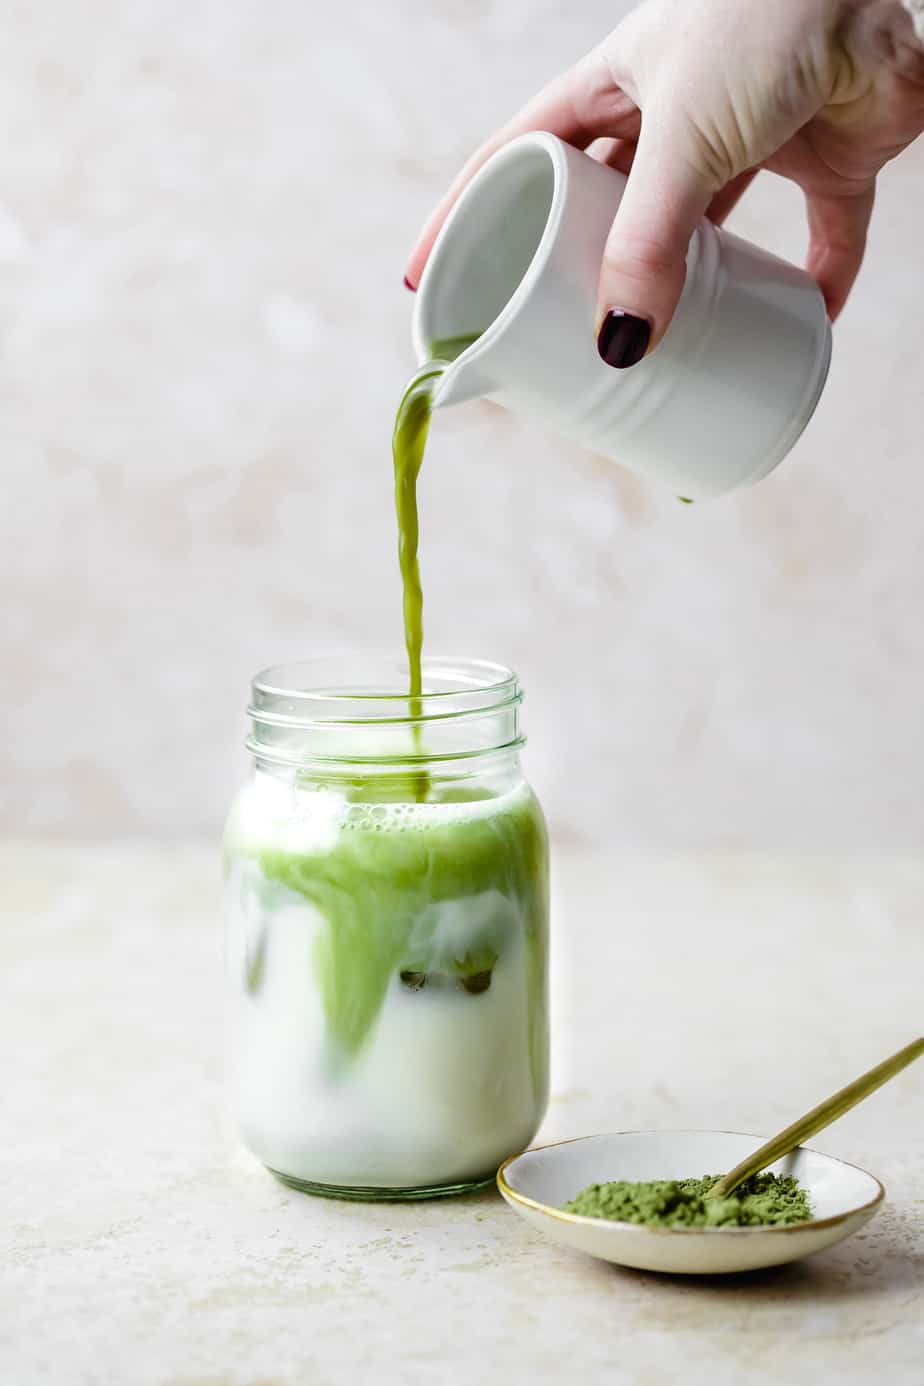 Iced Matcha Green Tea Latte - The Dinner Bite